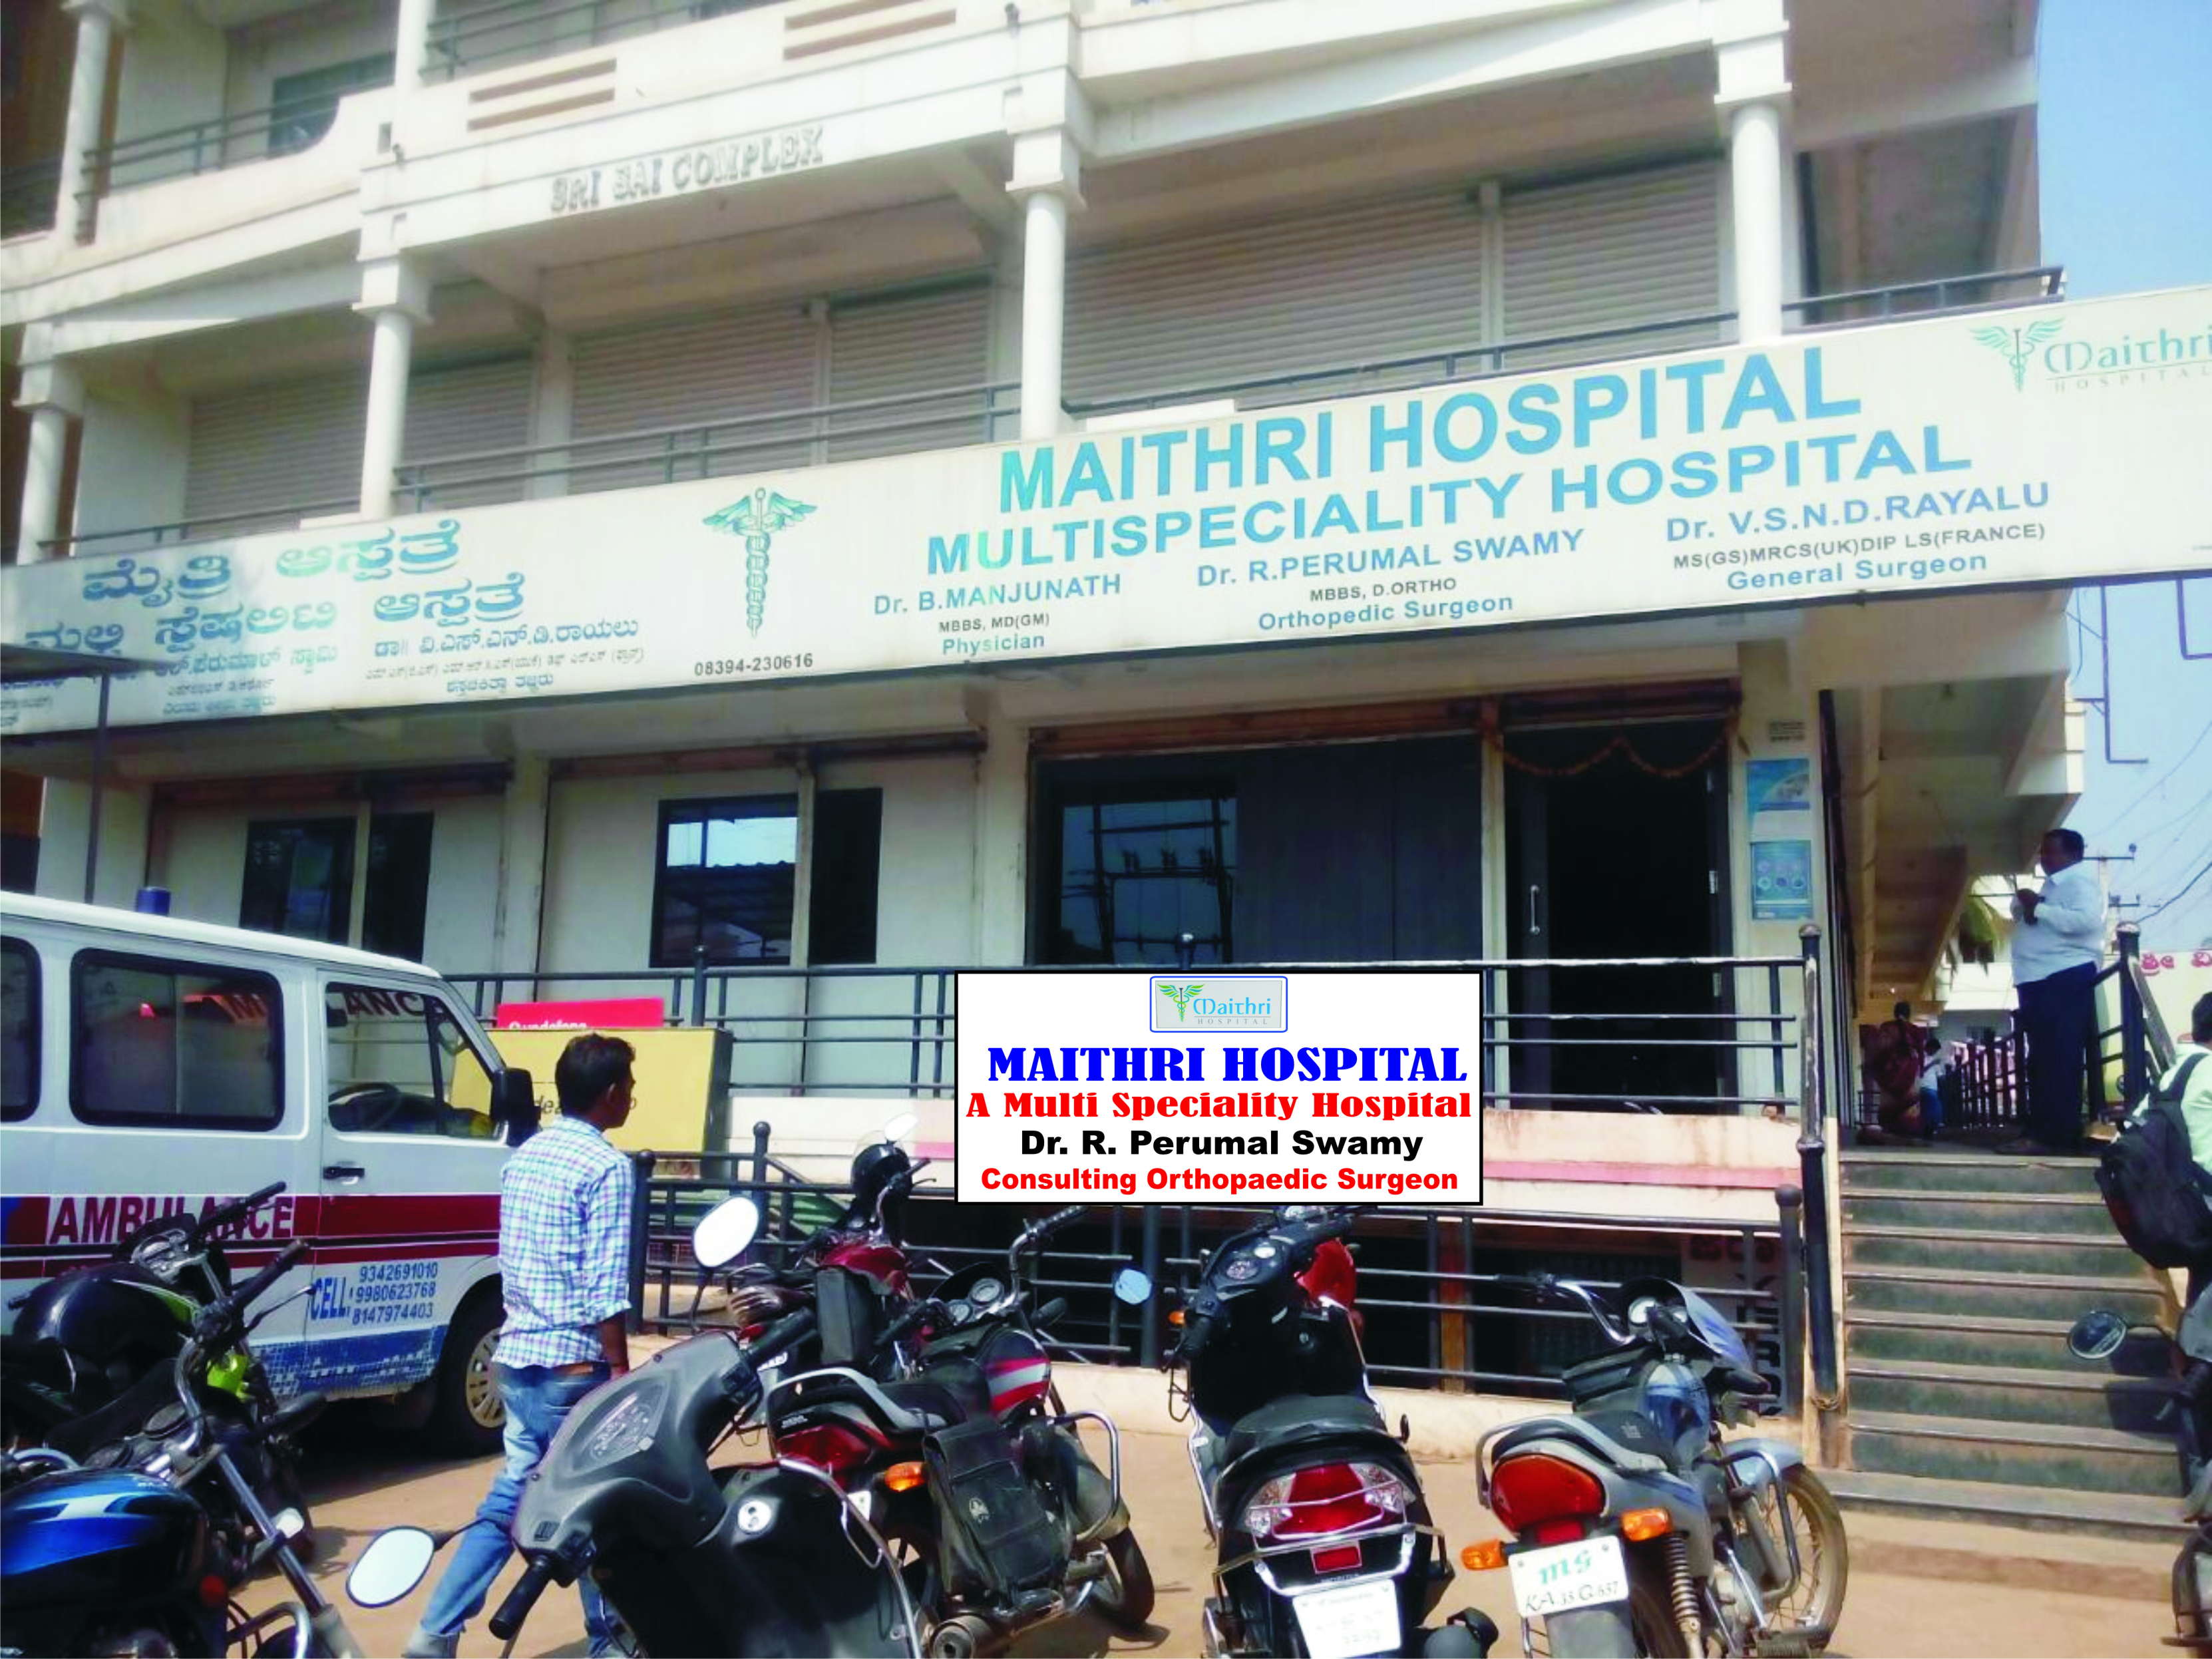 S.S. Maithri Hospital